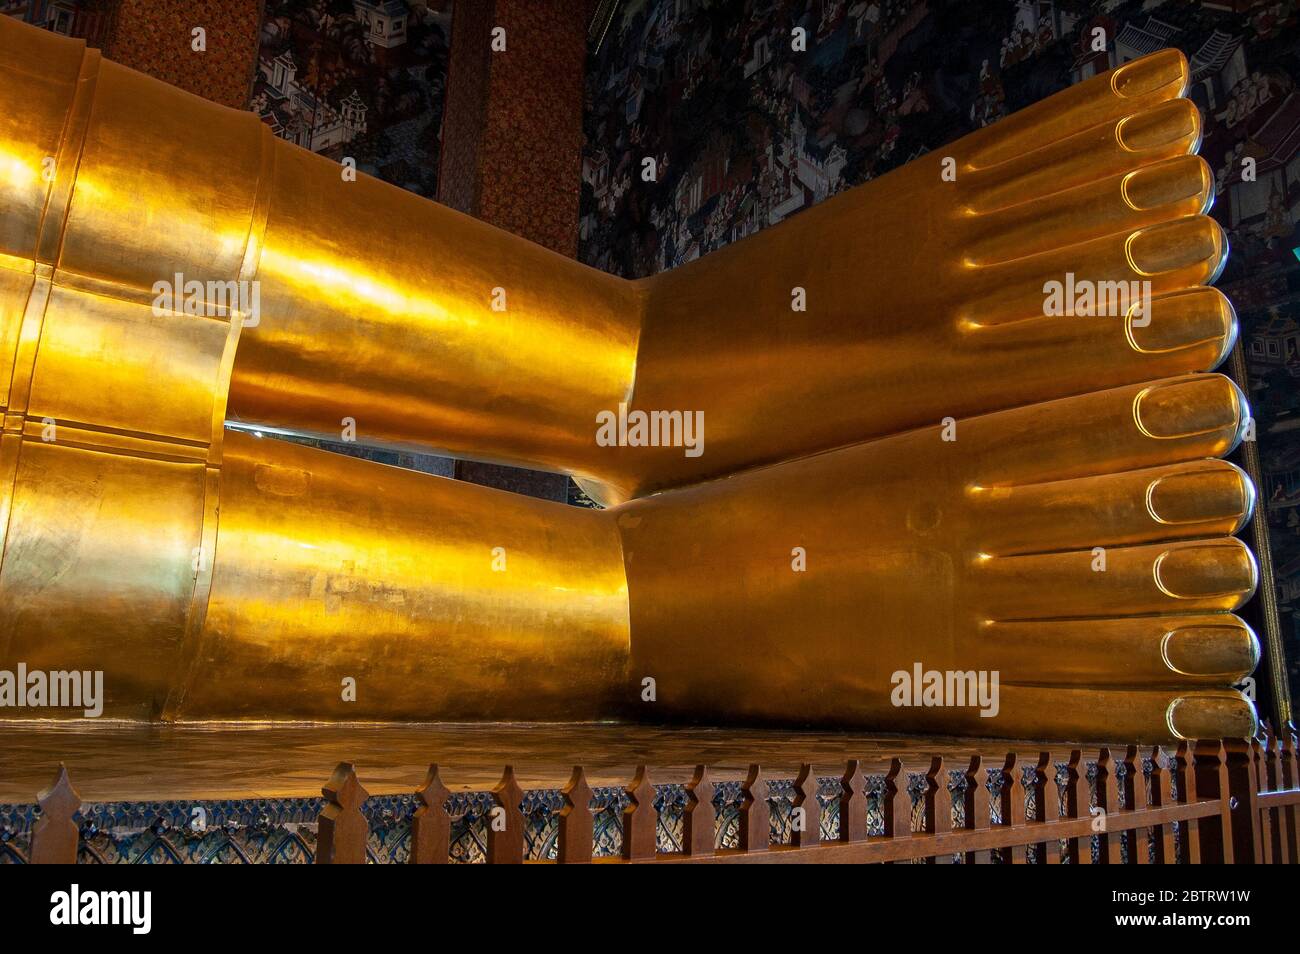 Buddha's feet at Wat Pho temple in Bangkok, Thailand. Stock Photo